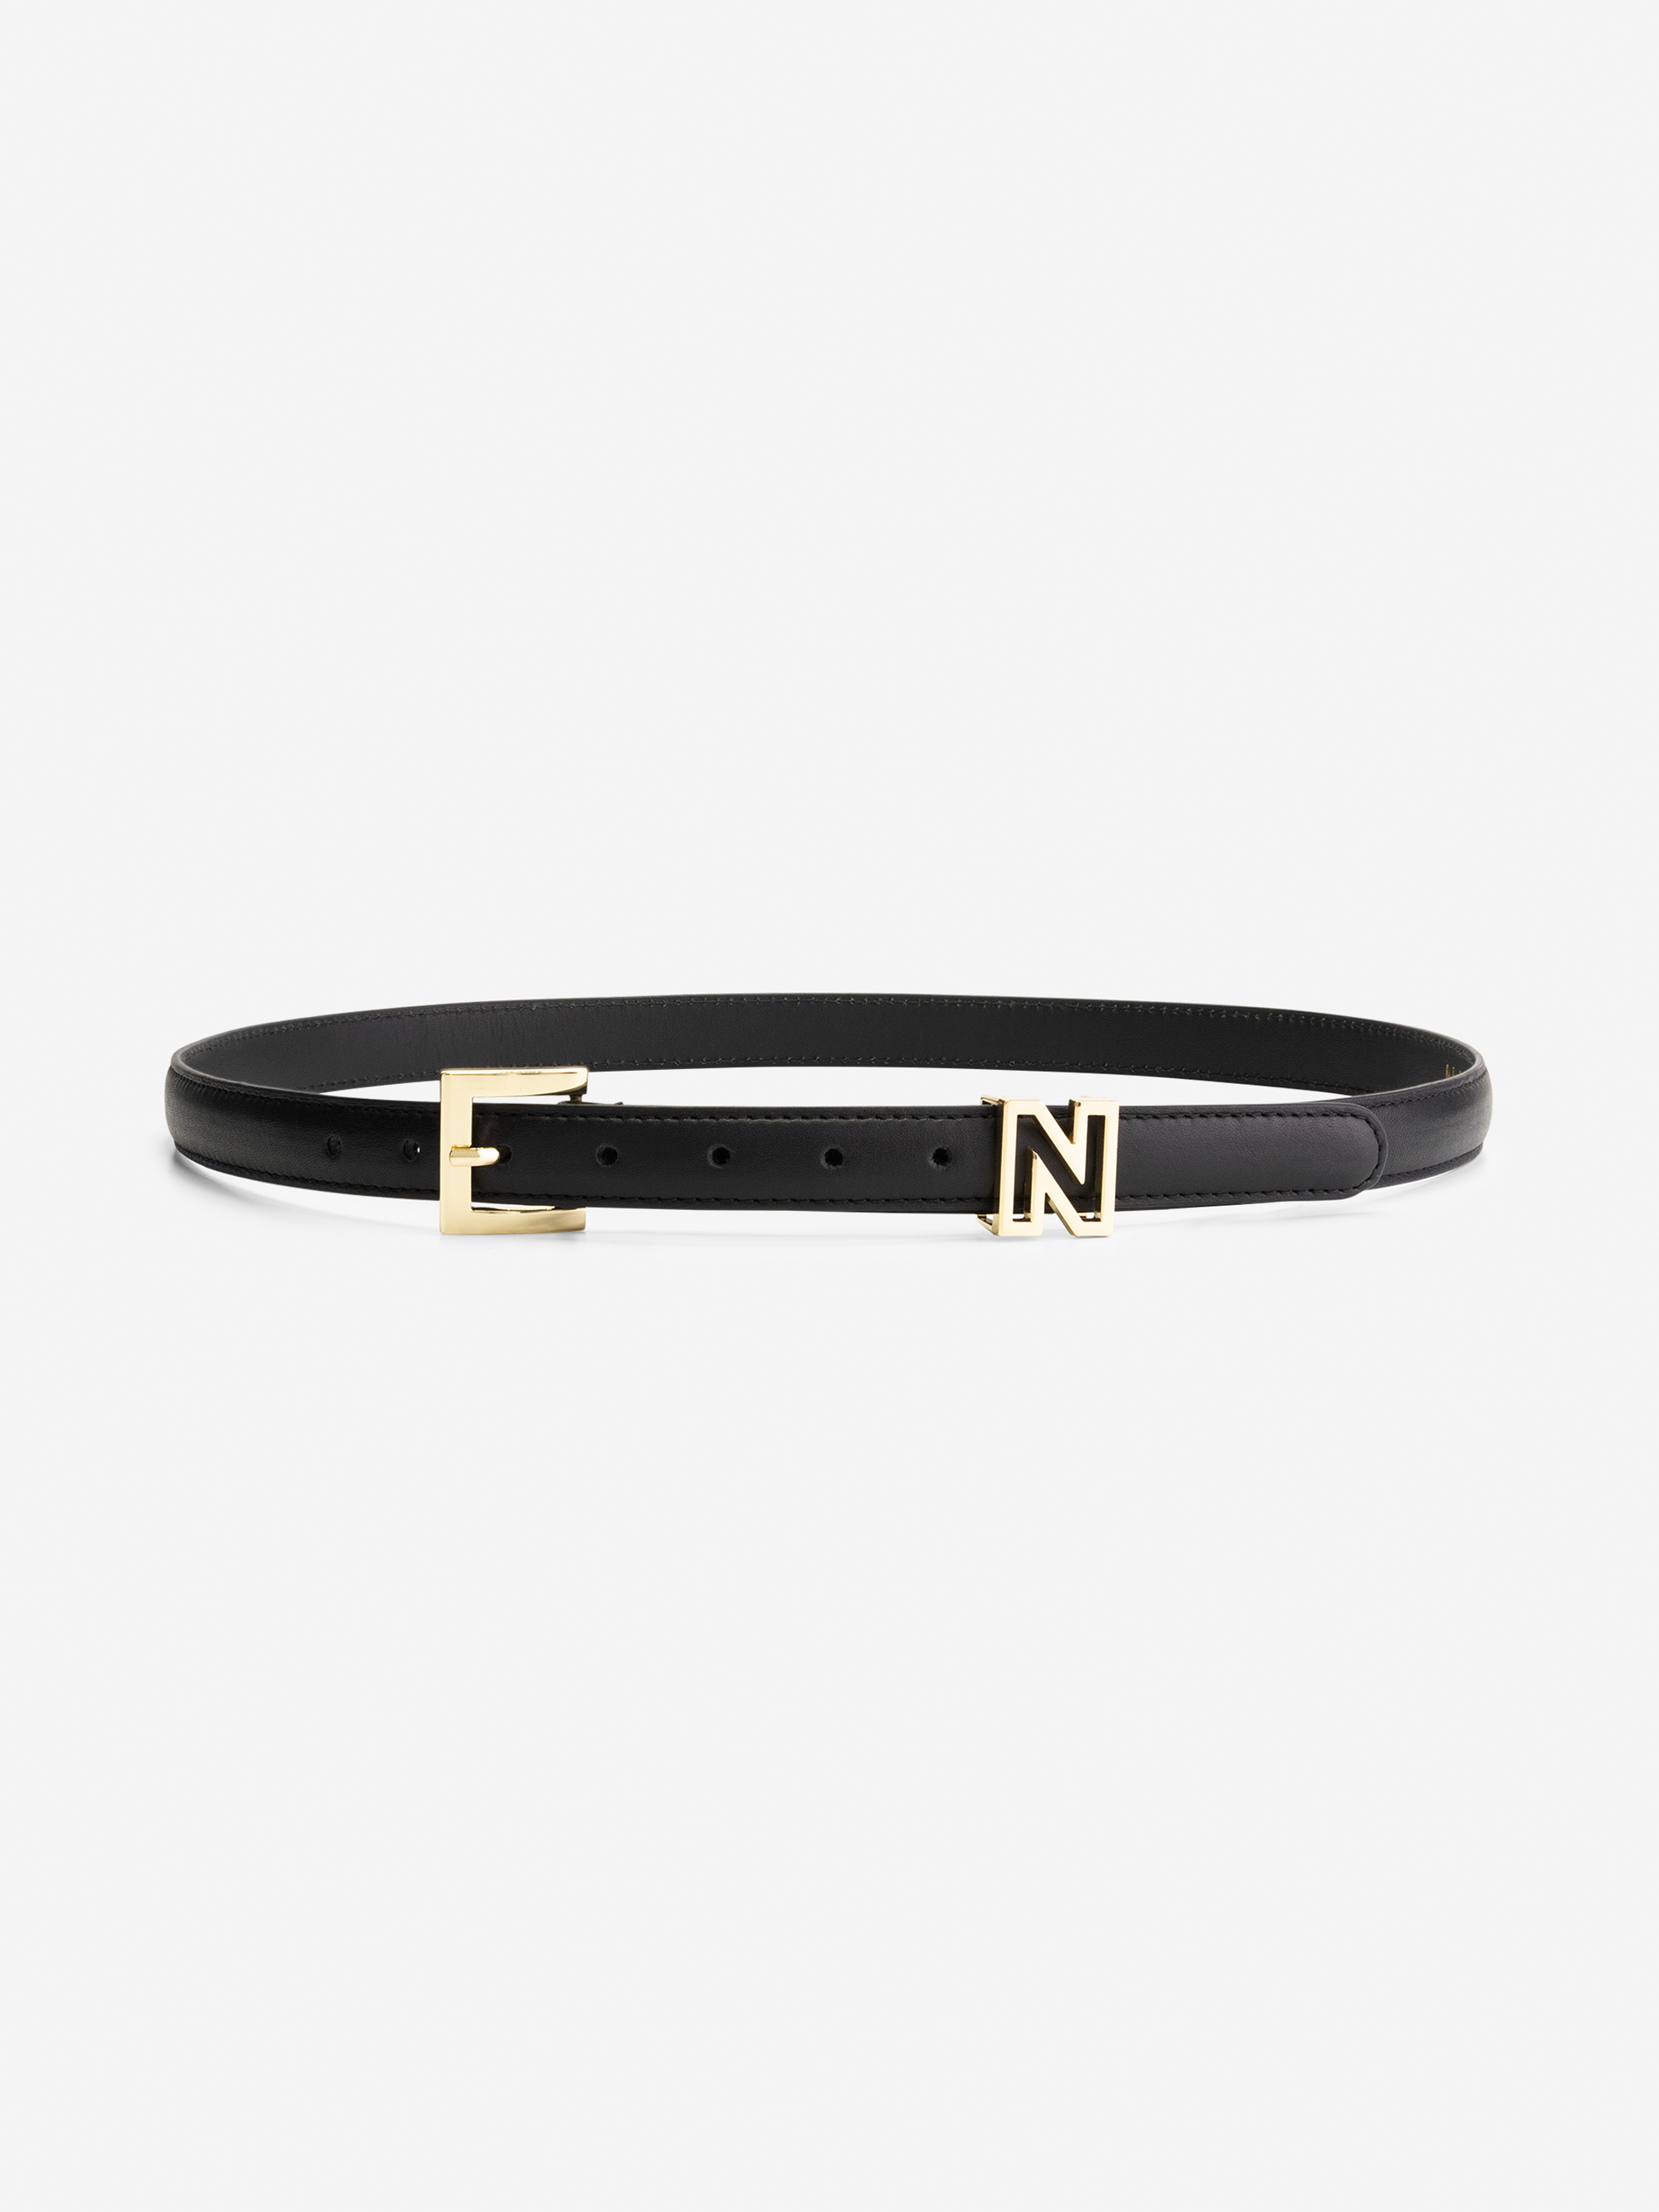 Thin belt with N logo